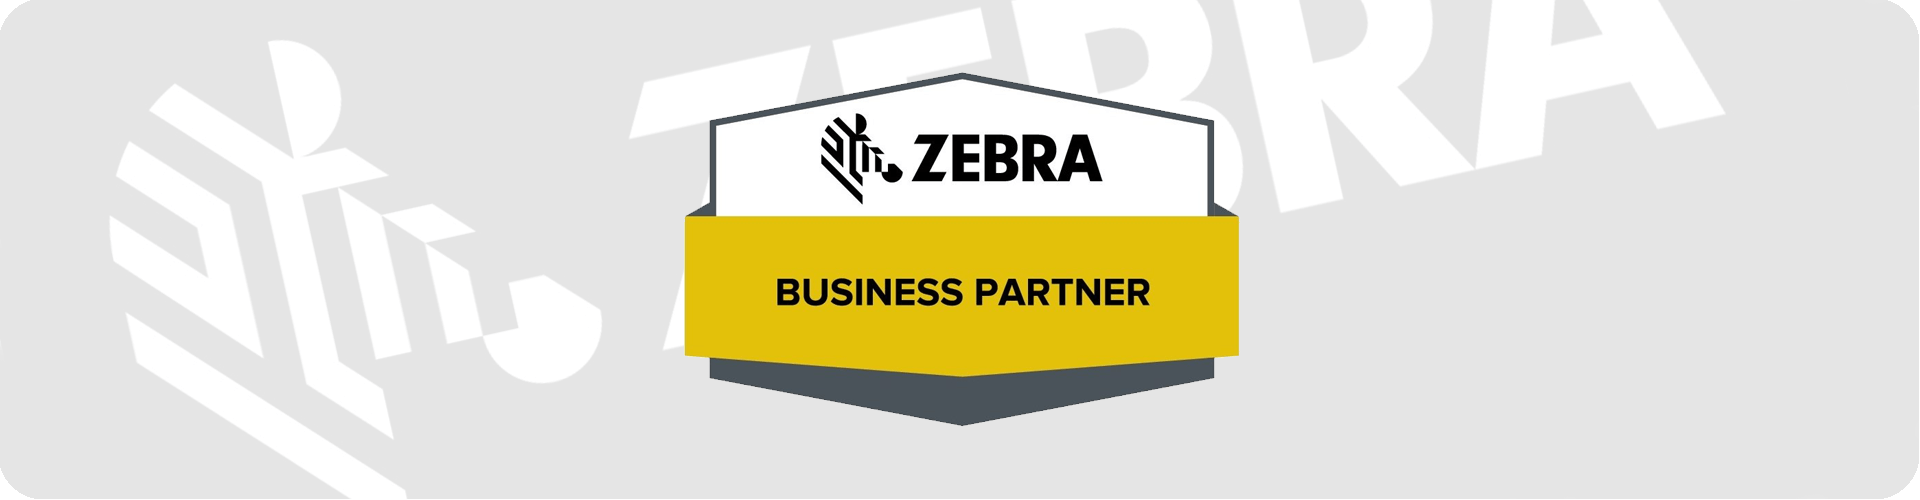 zebra business partner logo